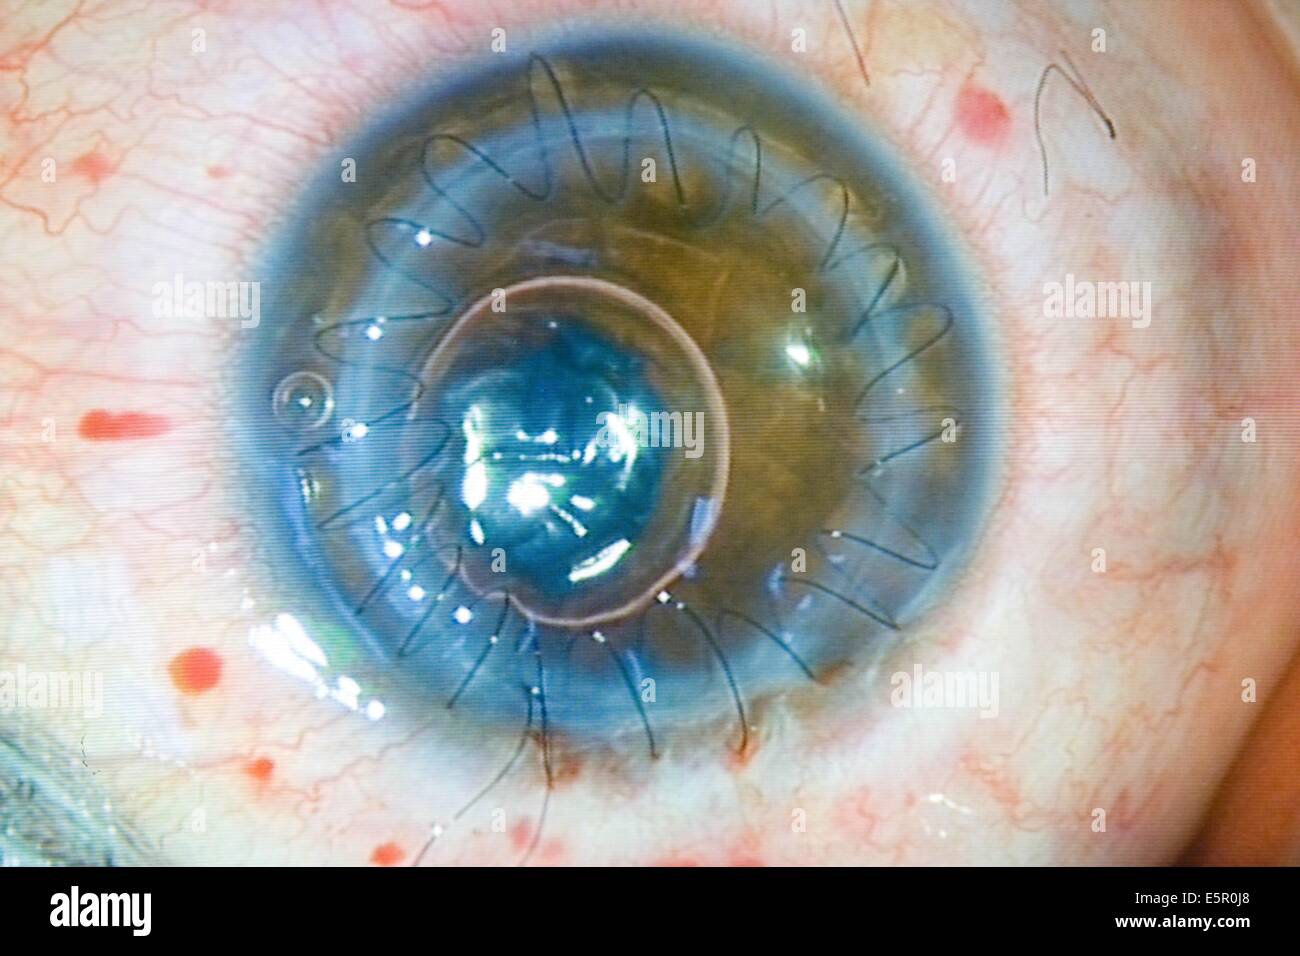 Injerto corneal, las suturas son visibles en los trasplantados de córnea. Foto de stock